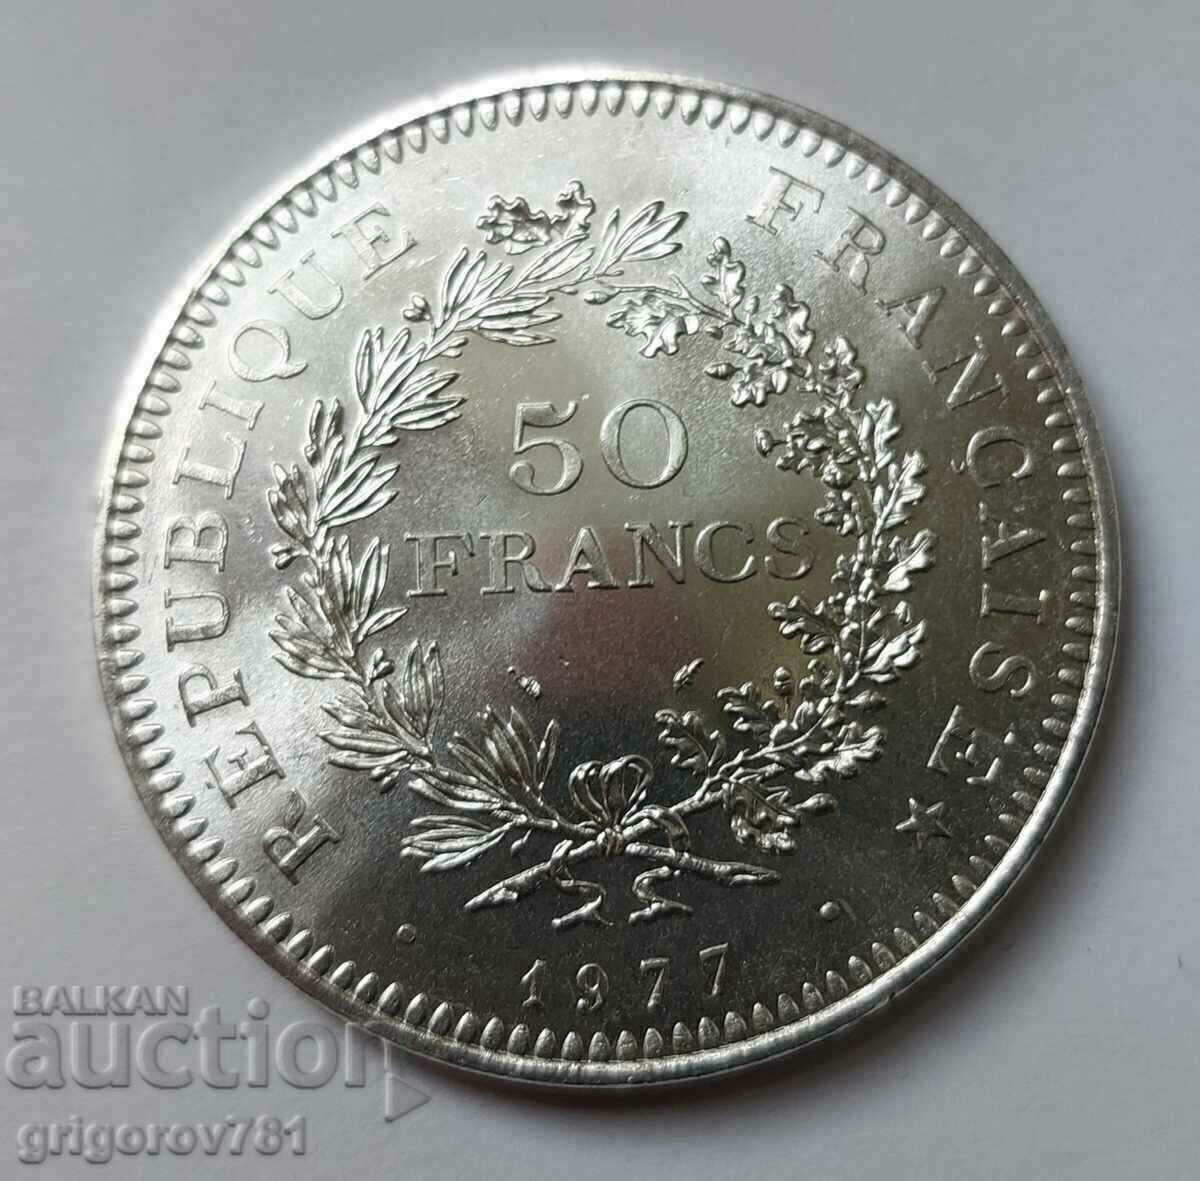 50 Franci Argint Franta 1977 - Moneda de argint #5